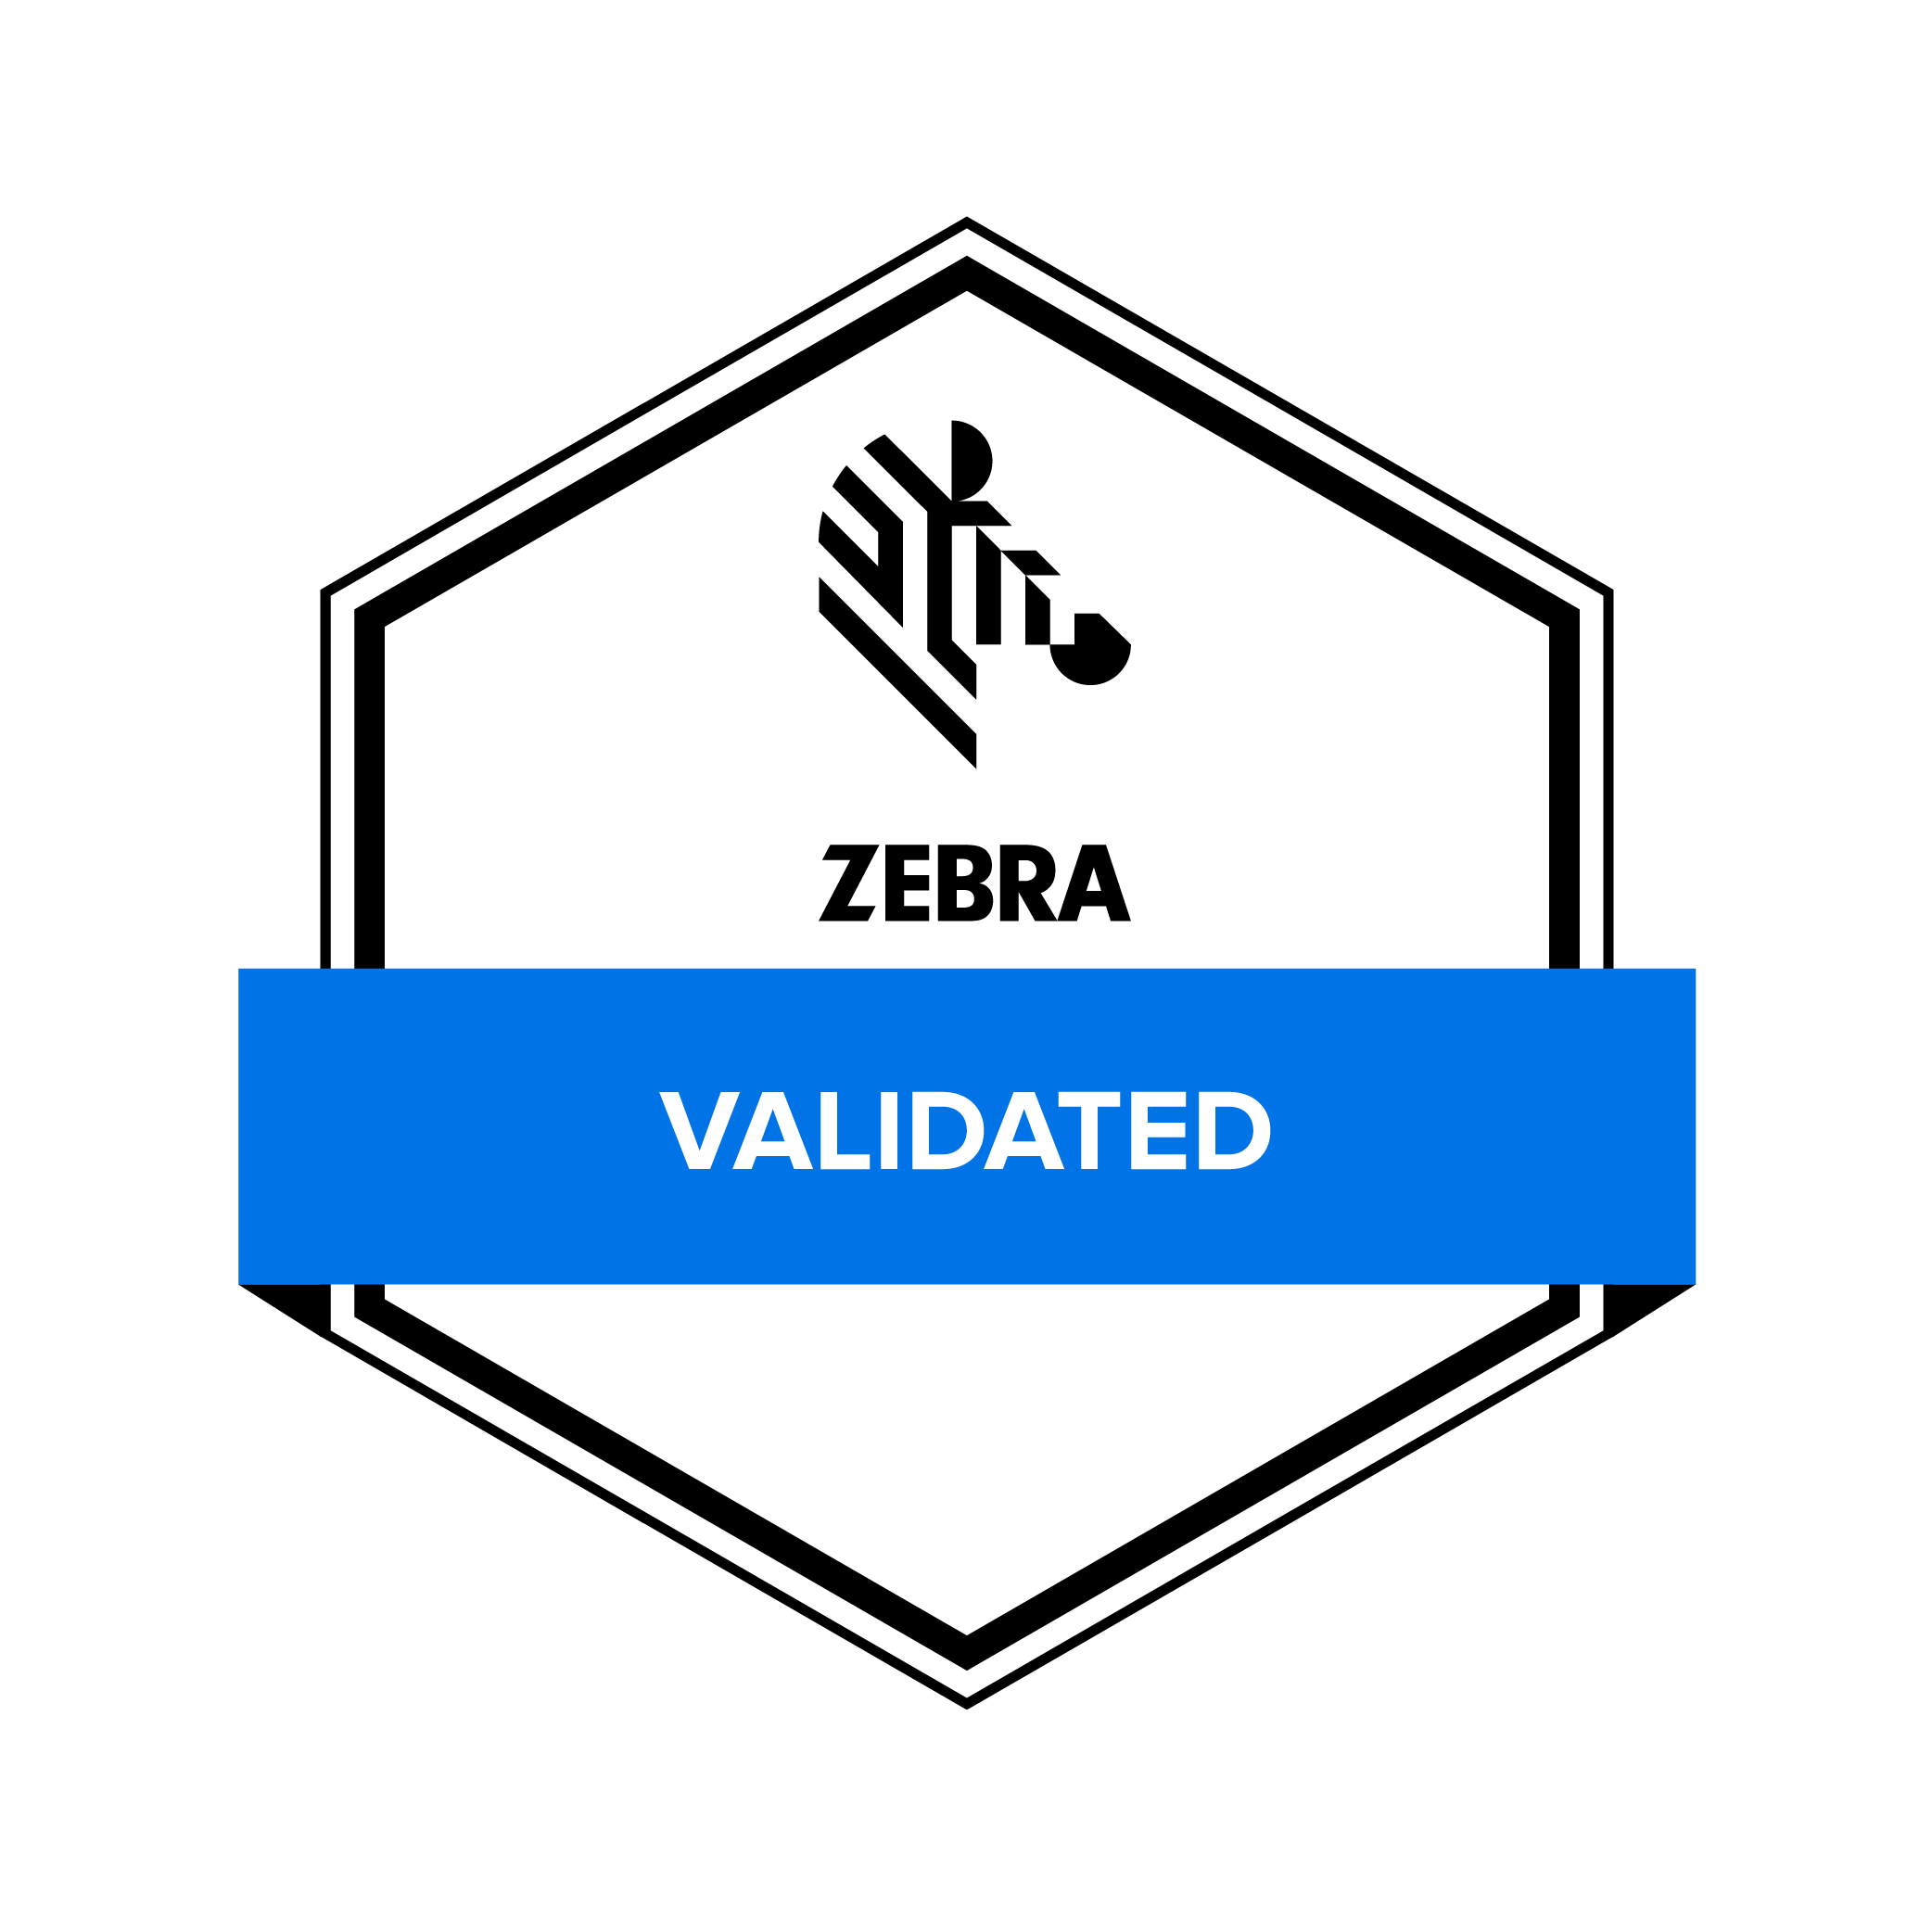 Die Check-it App wurde von ZEBRA validiert und ist dafür geeignet auf Zebra Geräten genutzt zu werden.